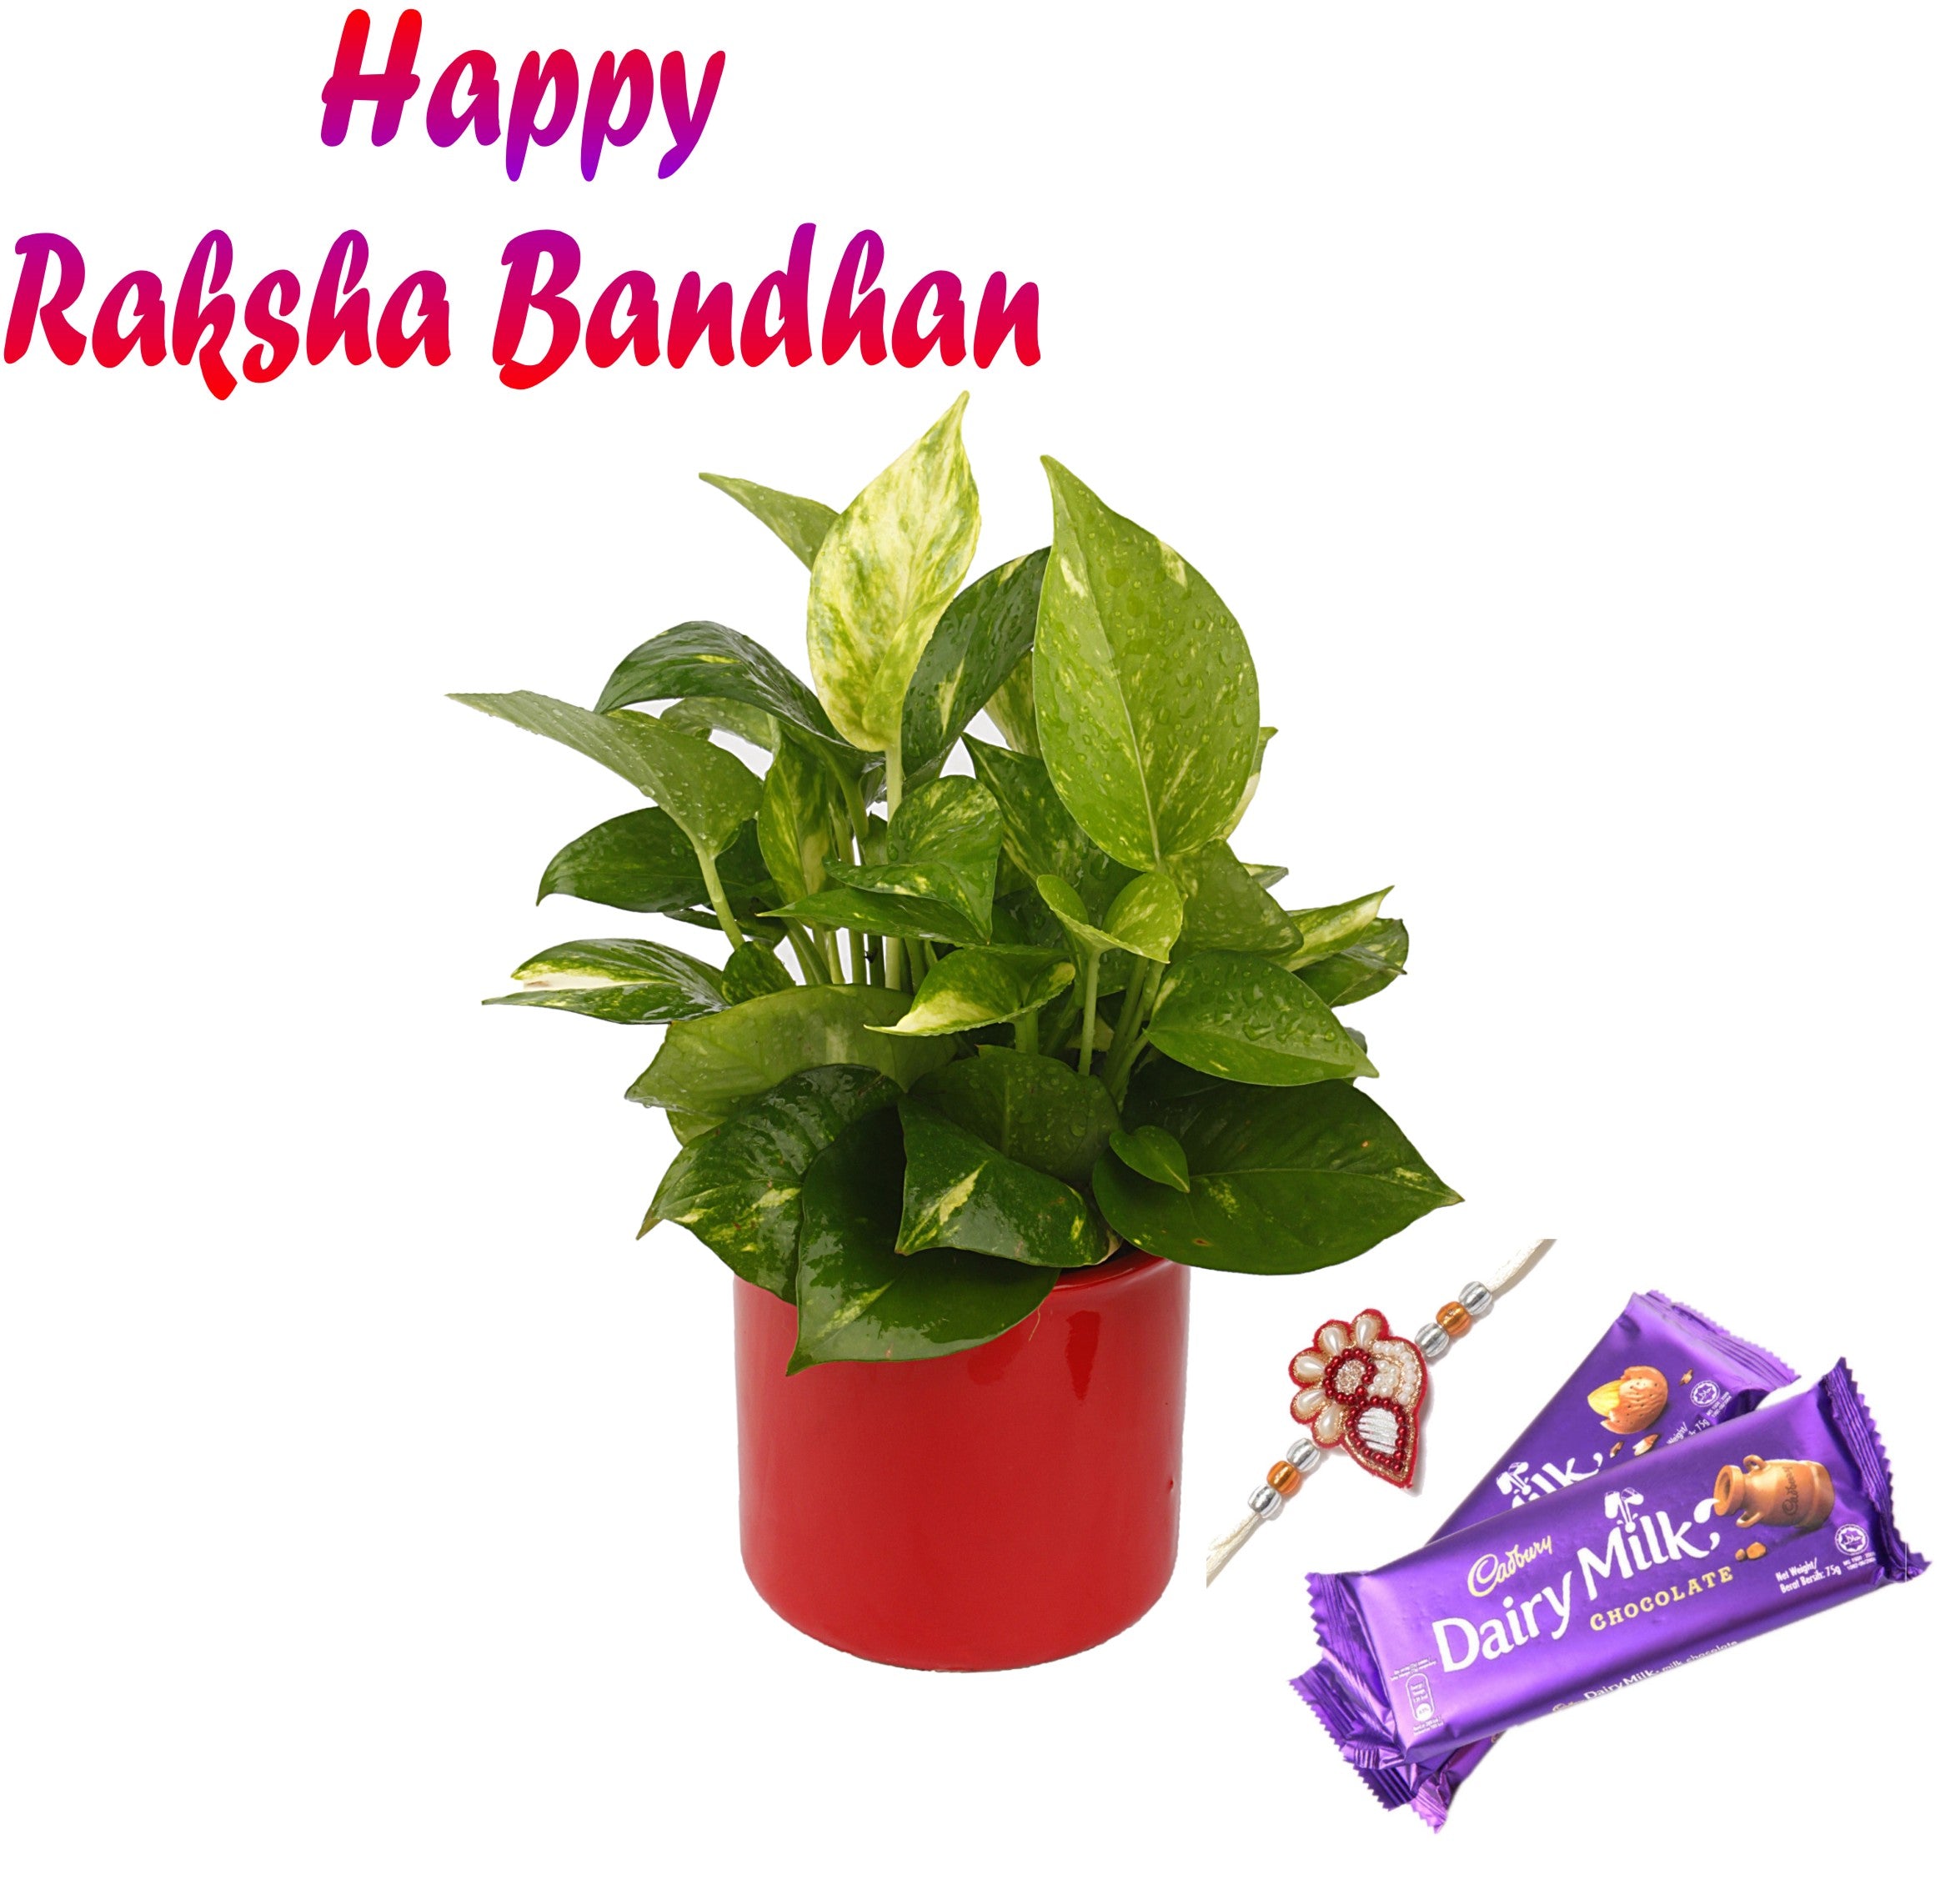 5 Best Rakhi gifts for siblings under 2000/-